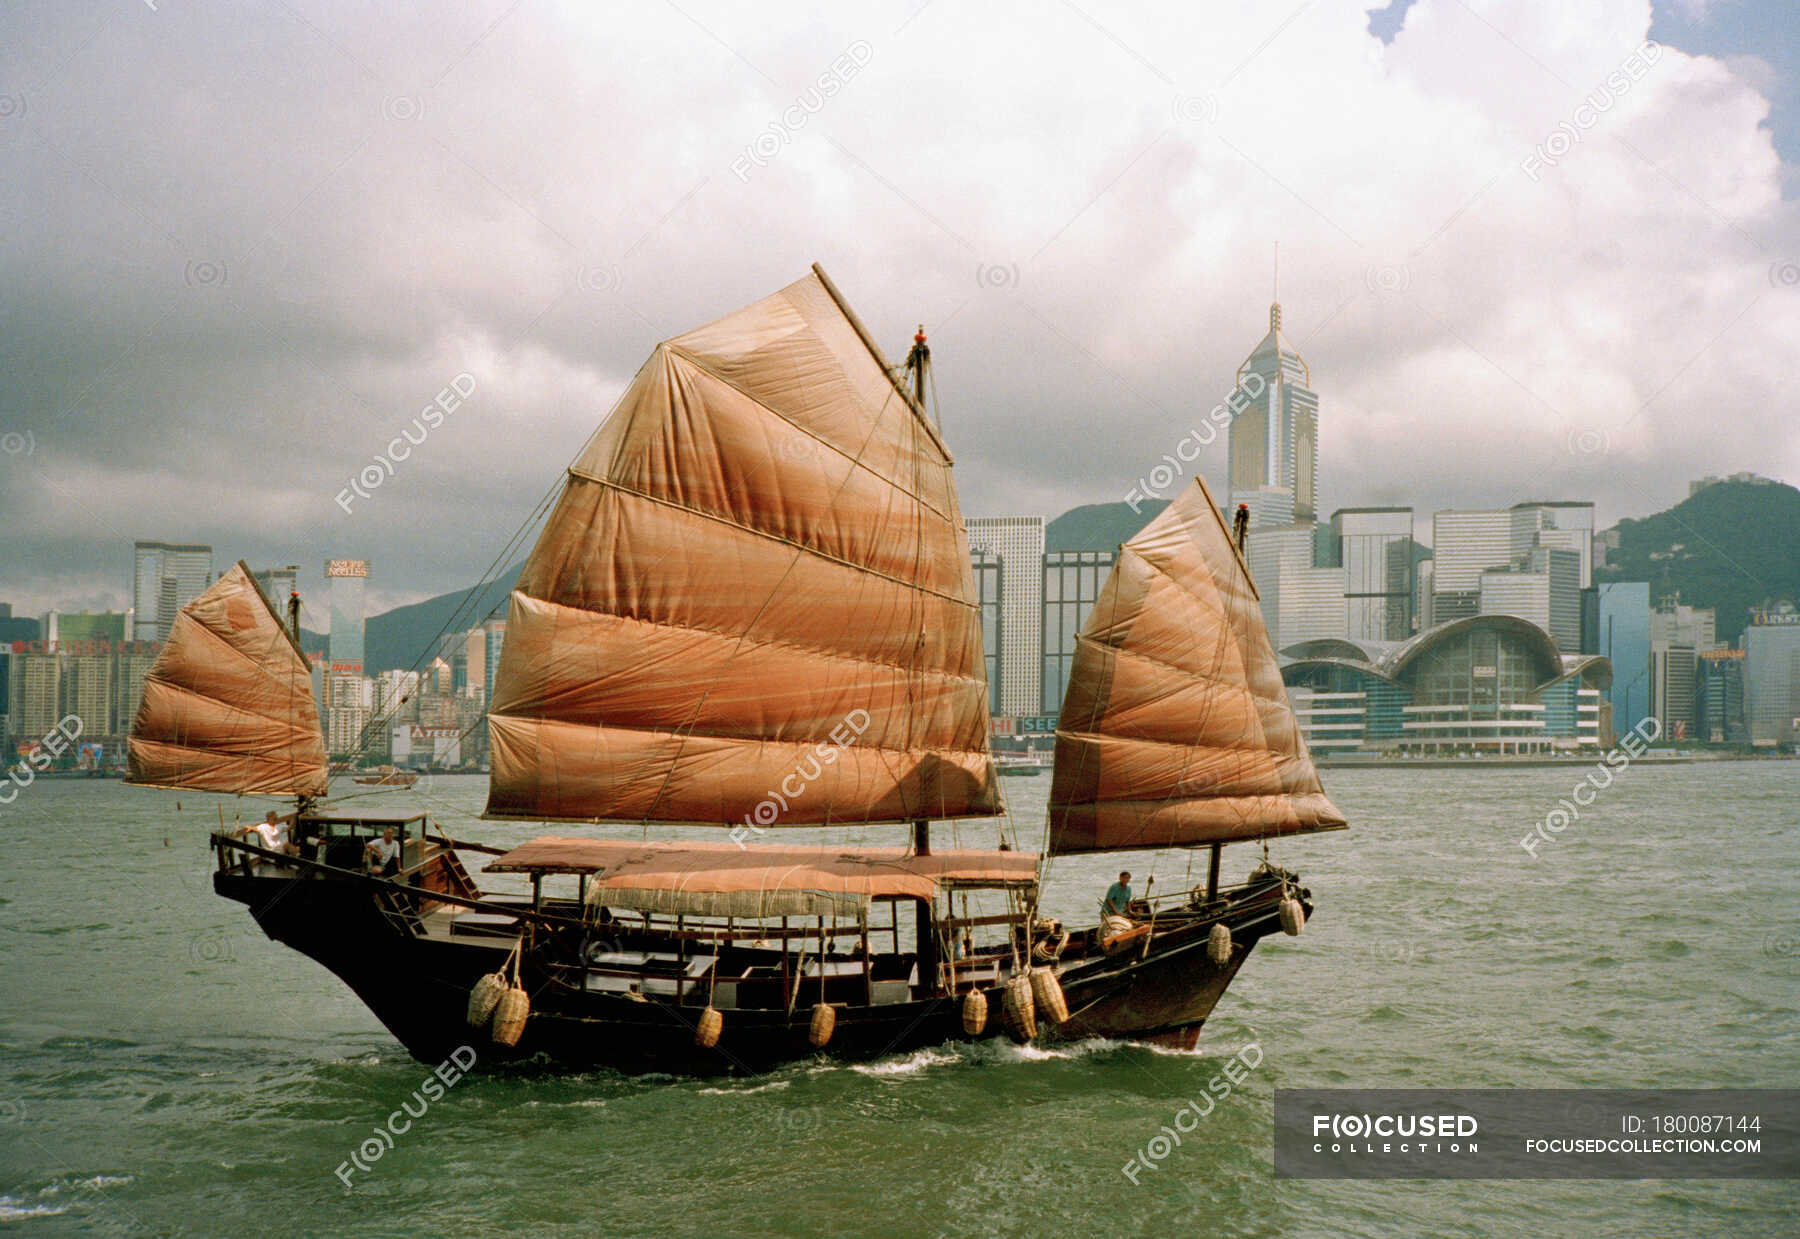 Китайская лодка 6 букв. Джонка. Китайские парусные суда. Лодка с парусом Китай. Древняя китайская Джонка.